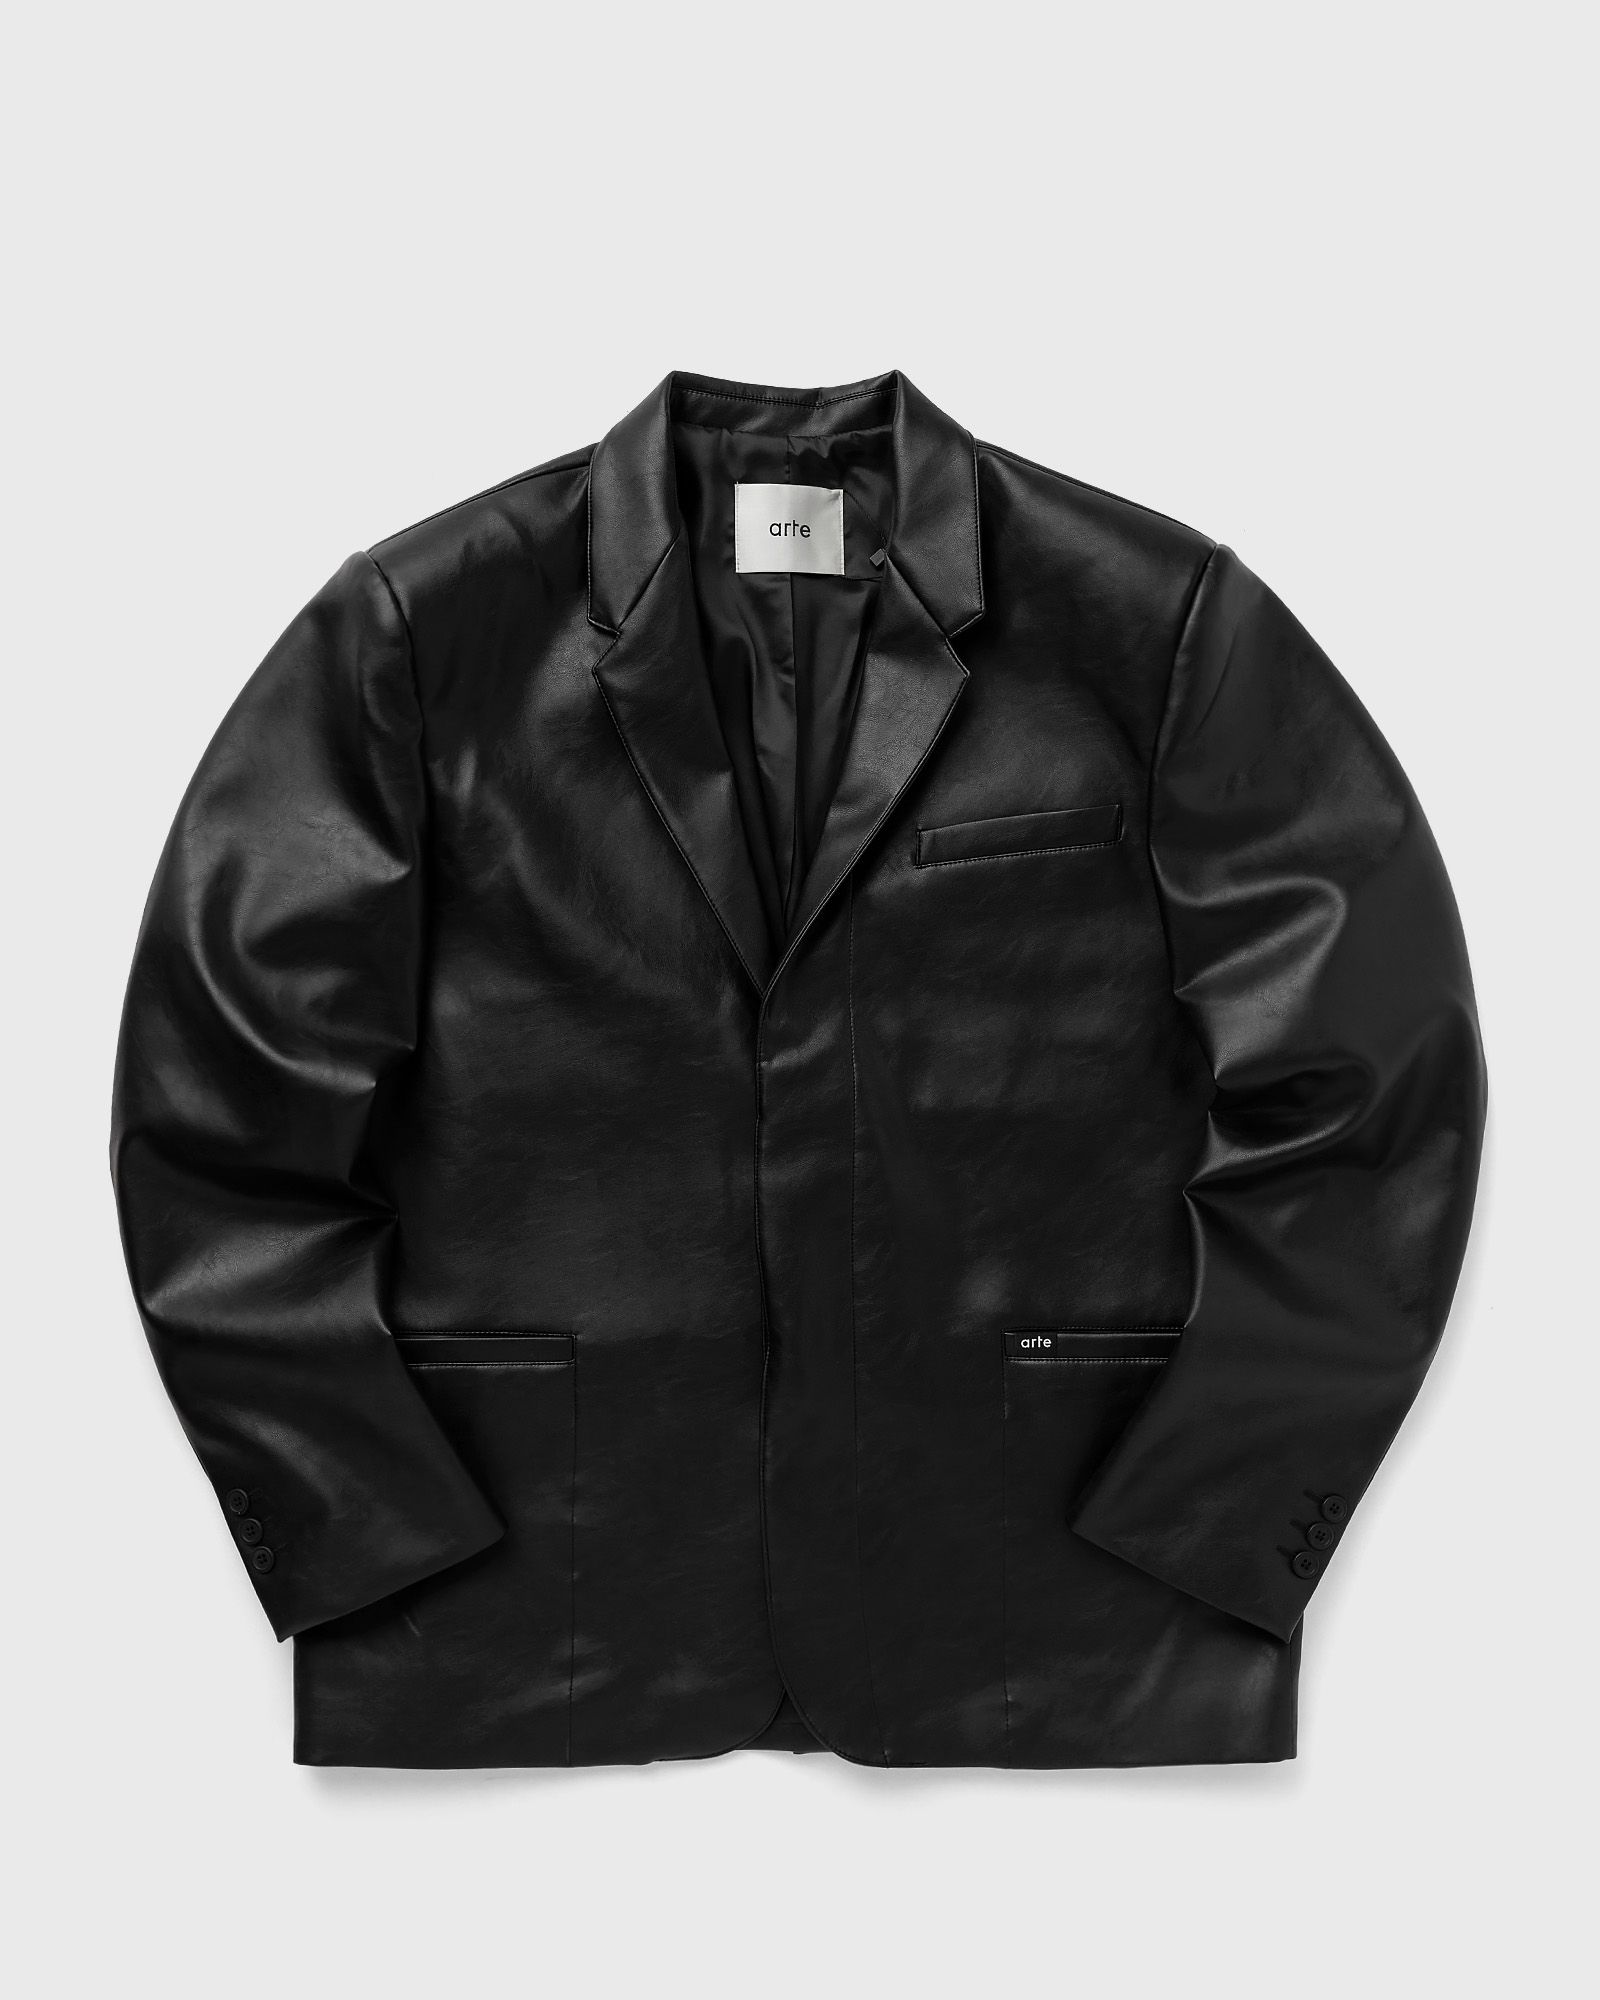 Arte Antwerp - leather suit jacket men coats black in größe:m